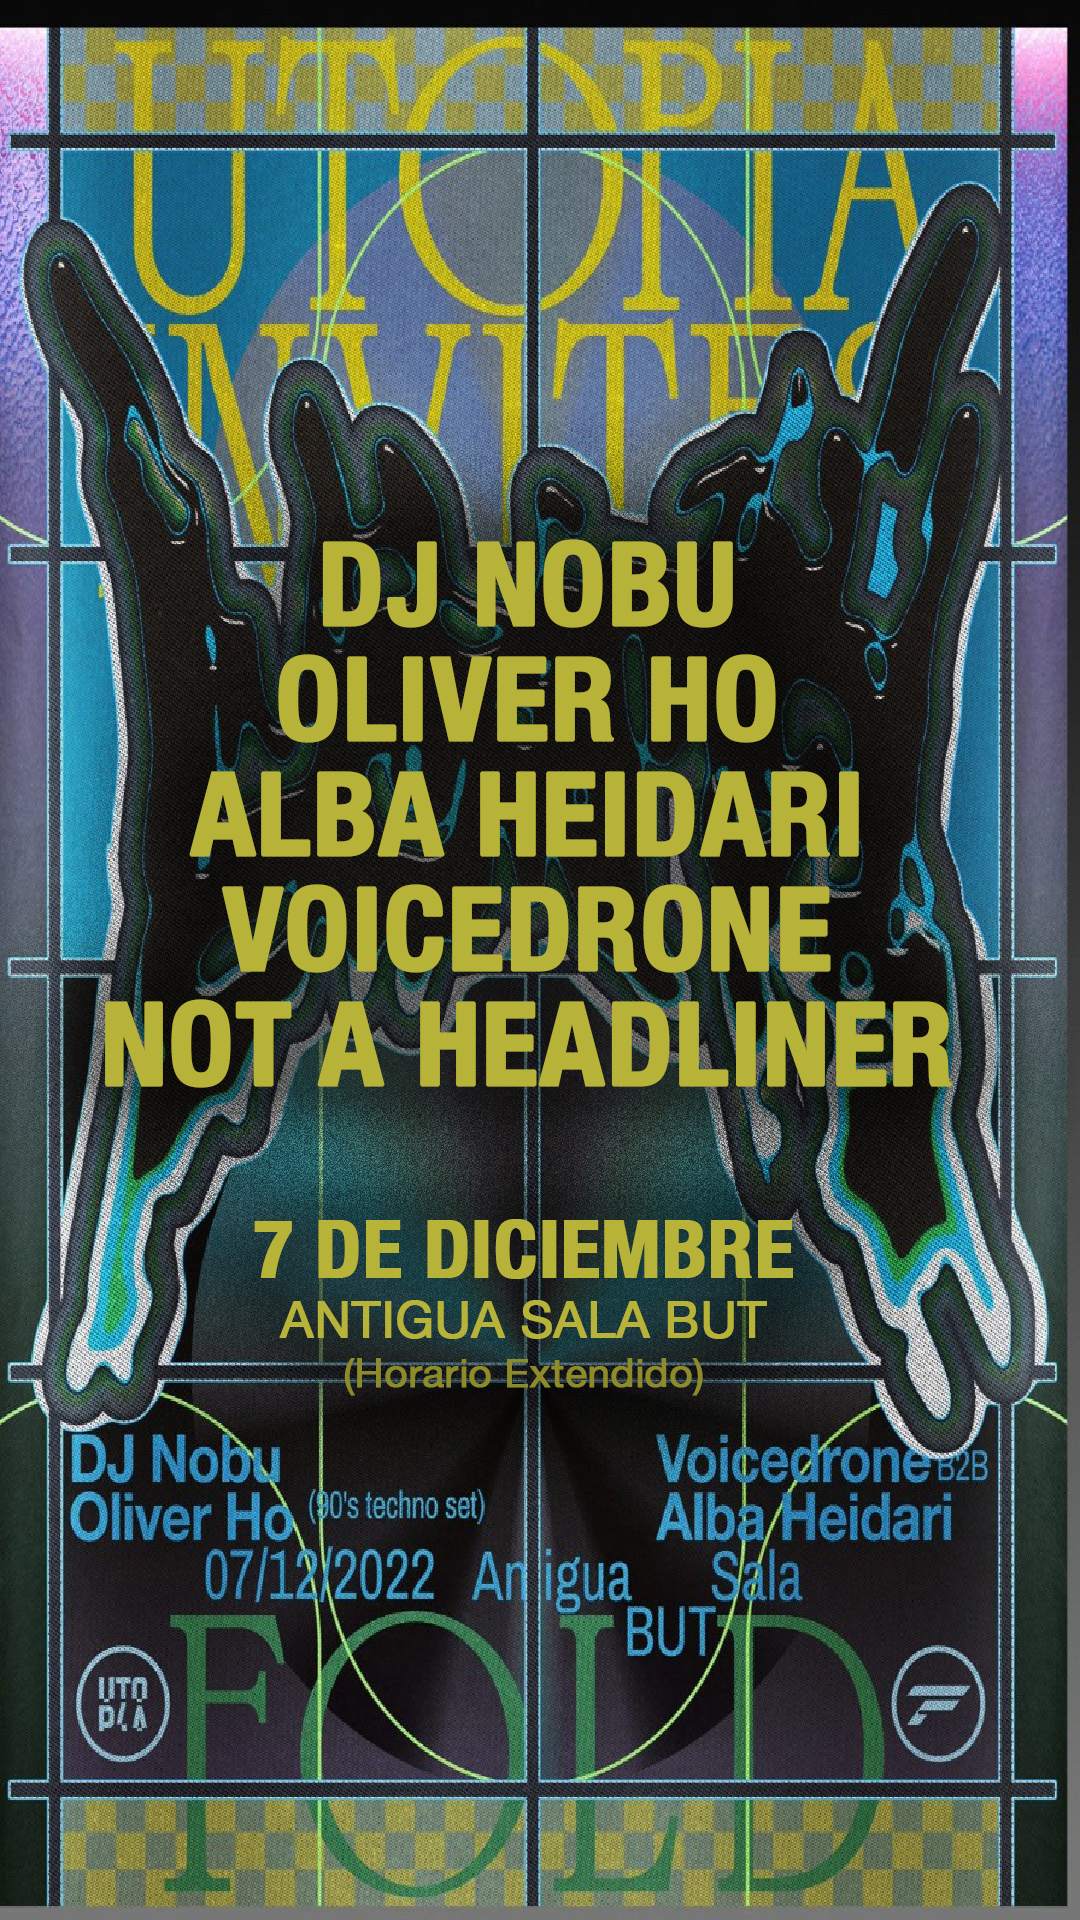 DJ Nobu / Oliver Ho / Not A Headliner / Voicedrone b2b Alba Heidari | UTOPIA invites FOLD - フライヤー表